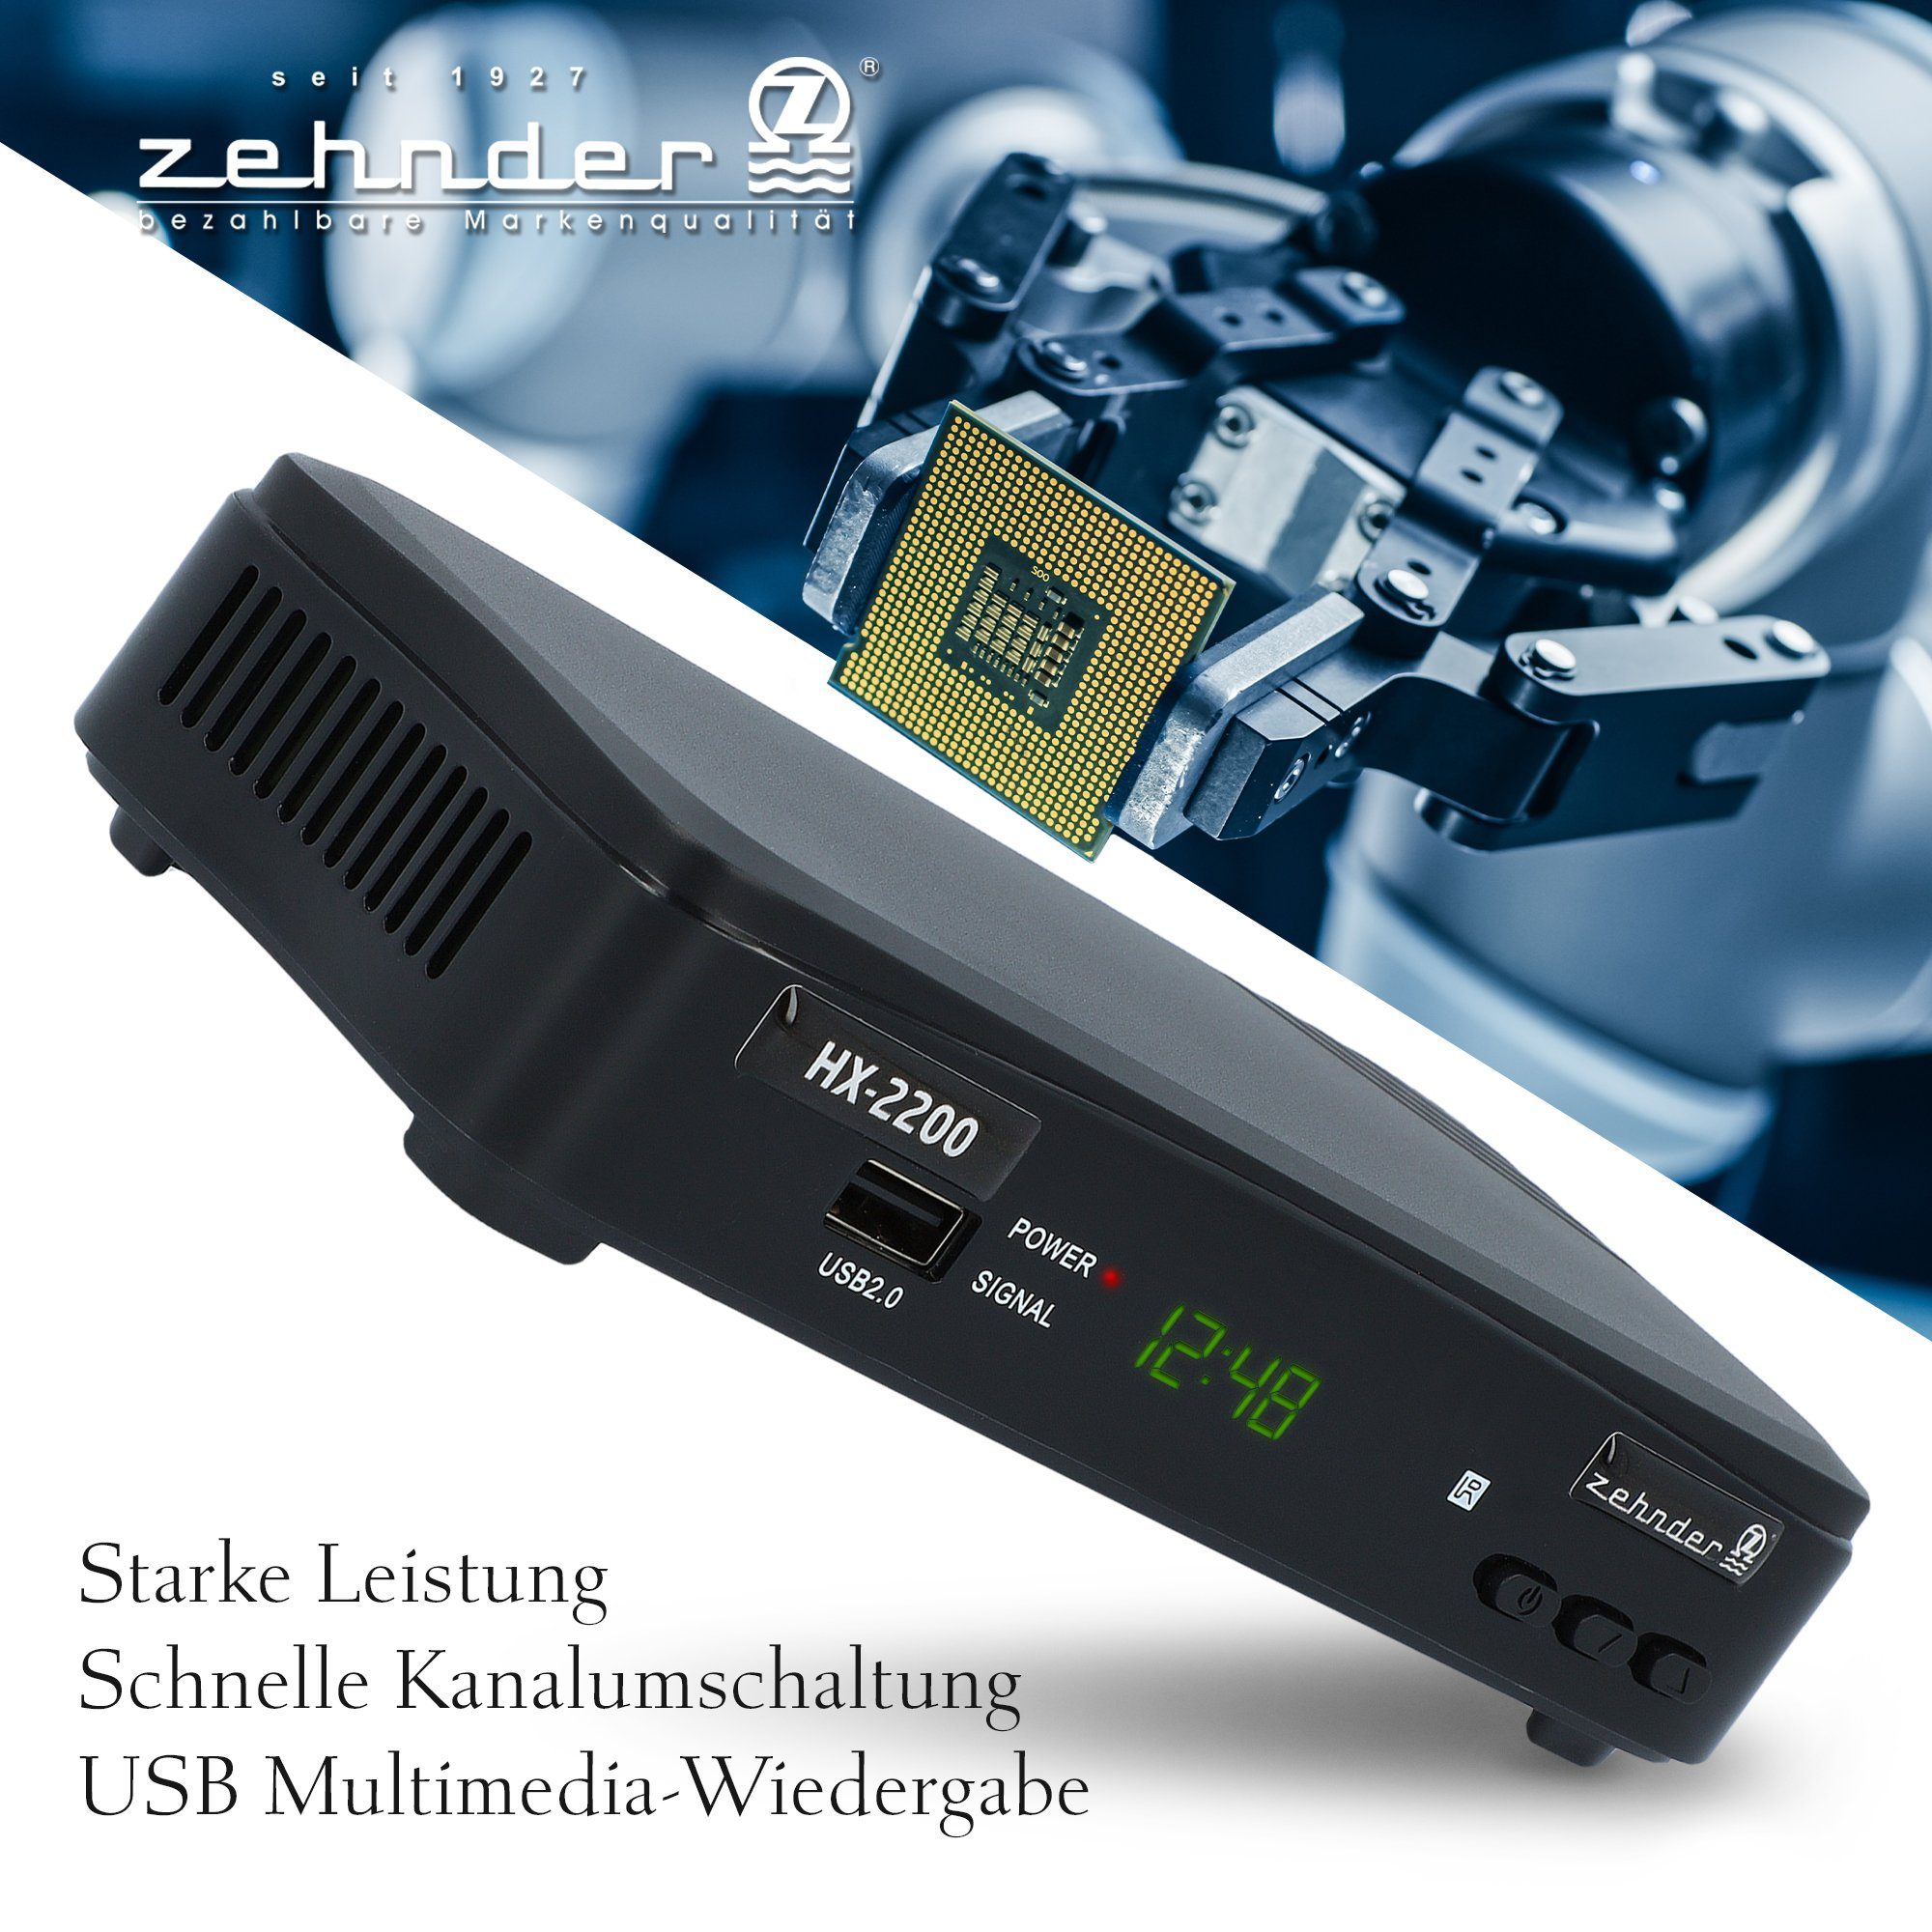 SCART, - SAT-Receiver Coaxial, Camping tauglich) Einkabel (Aufnahmefunktion, 12V PVR ready USB, HDMI, HX-2200 Zehnder